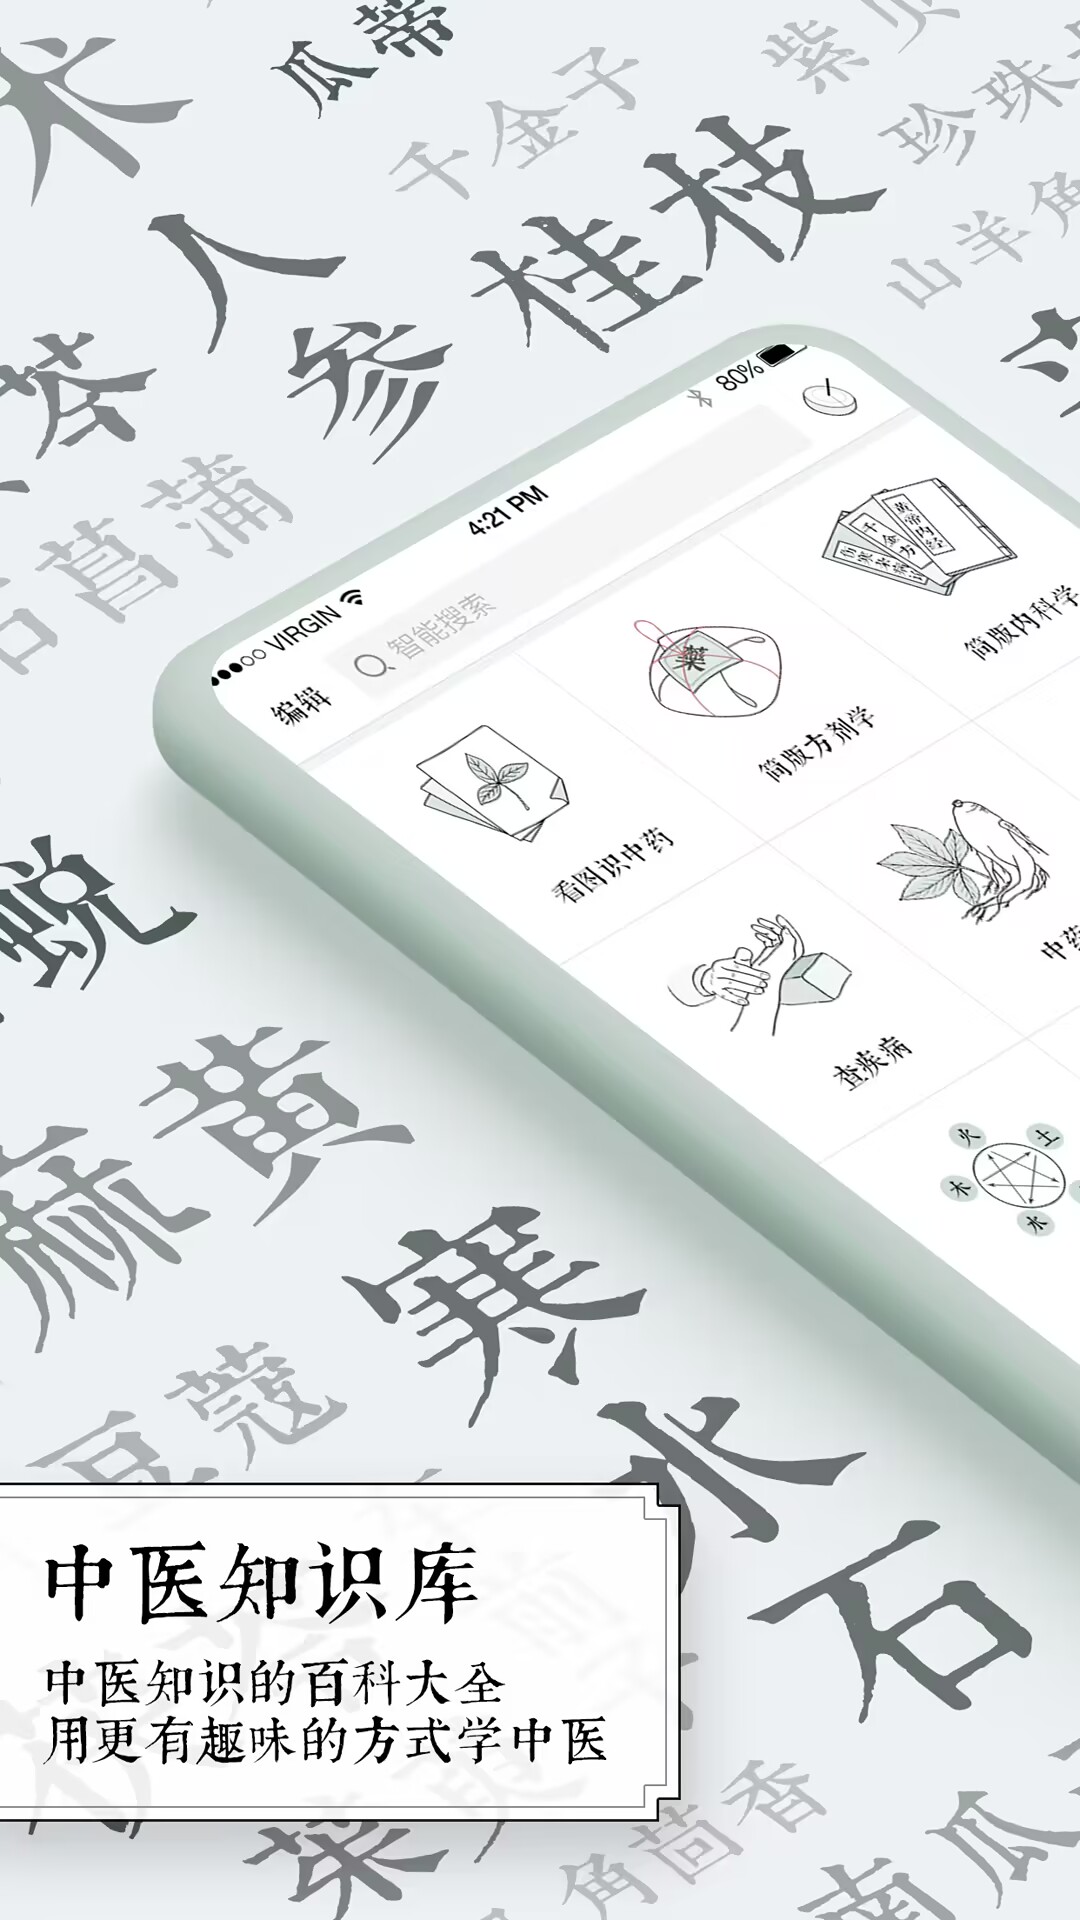 中医app哪个好 中医方面的软件推荐